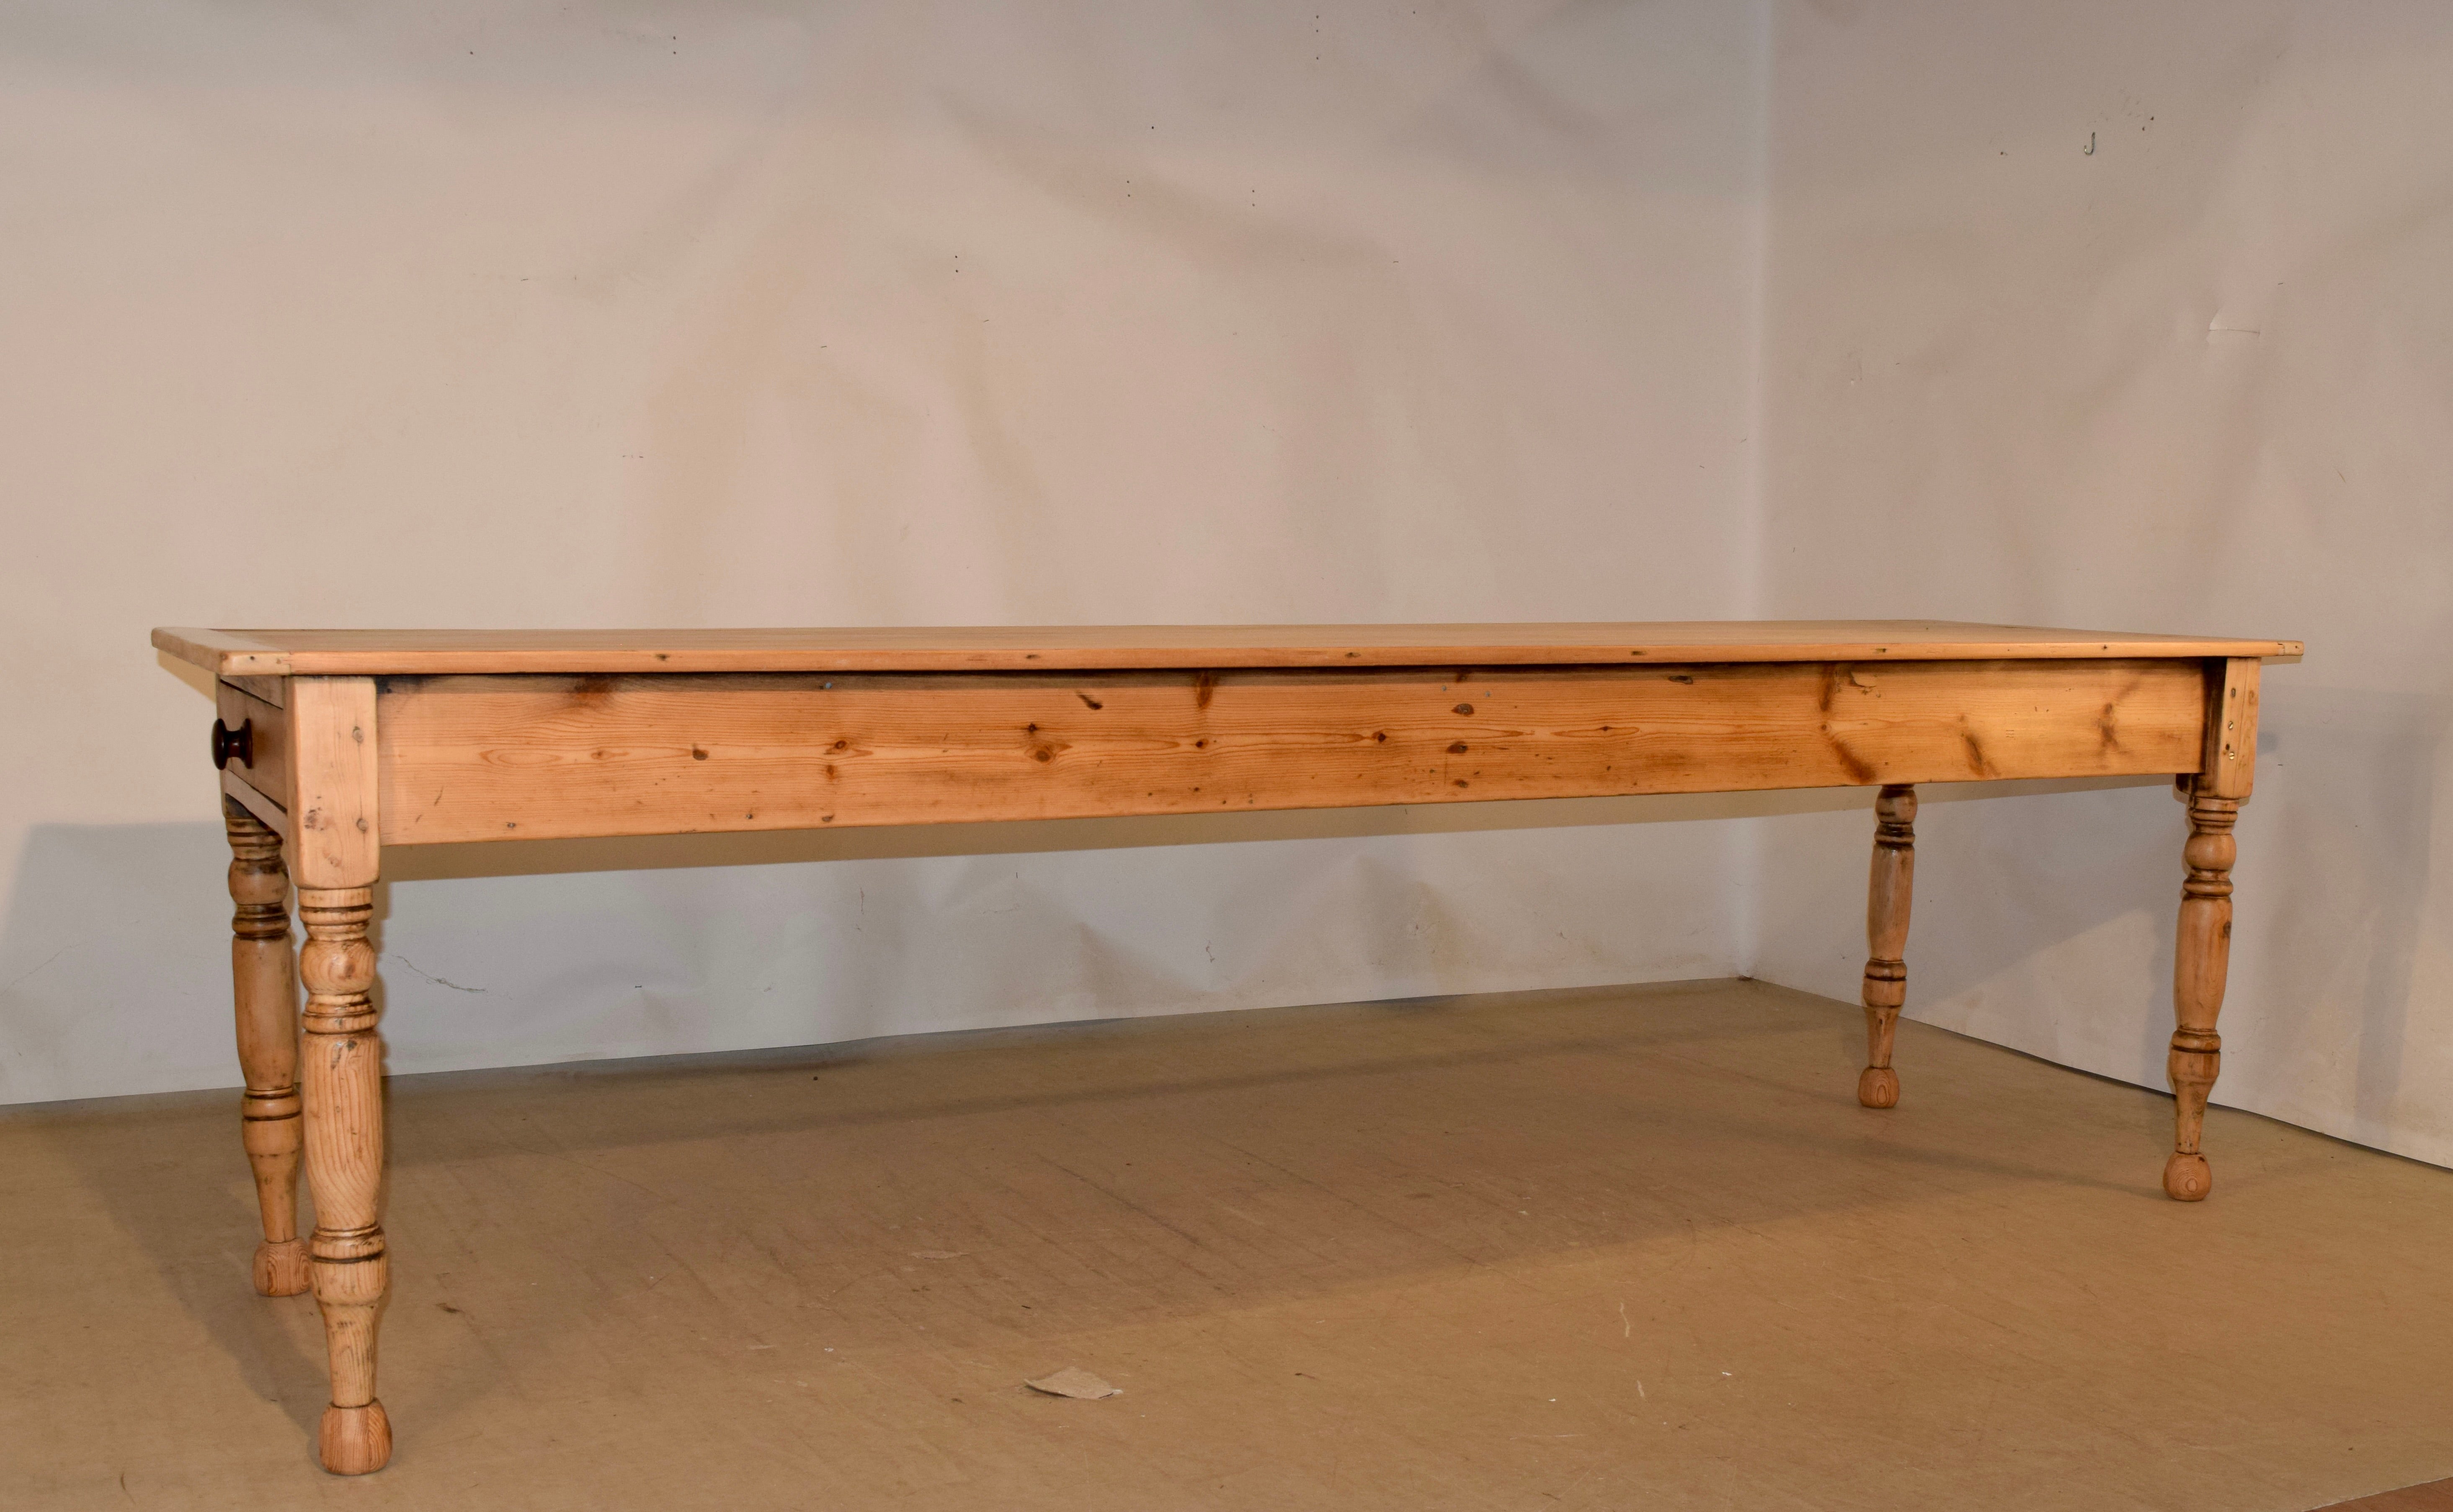 table de ferme anglaise du 19ème siècle en pin. Le plateau est composé de cinq planches et est bordé aux extrémités de bois de sycomore pour éviter le rétrécissement. Le tablier est simple et contient un seul tiroir à une extrémité. La table est